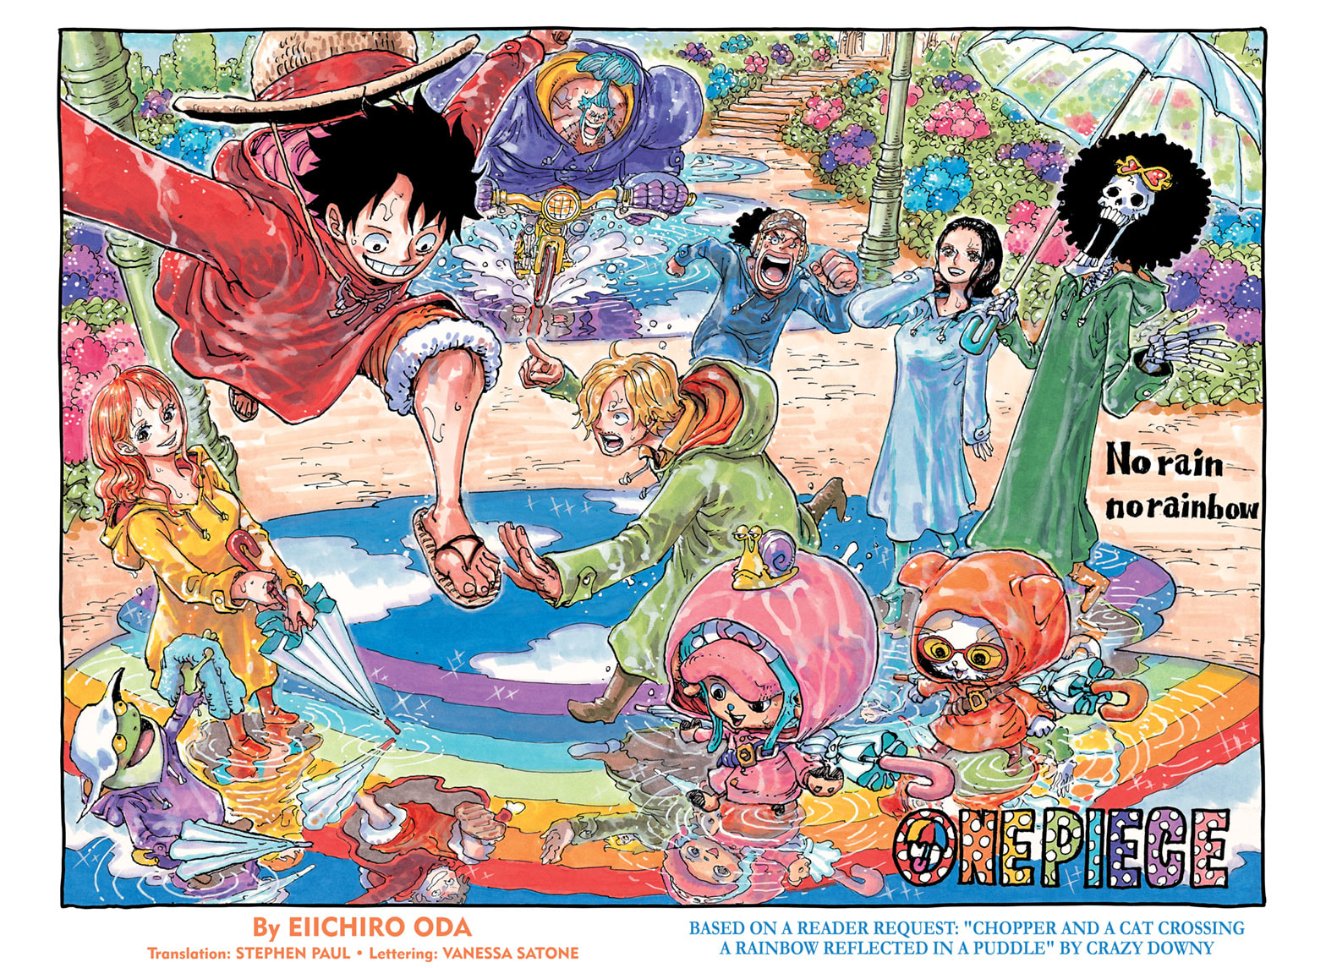 1ª temporada de One Piece tem mais de 18 milhões de visualizações